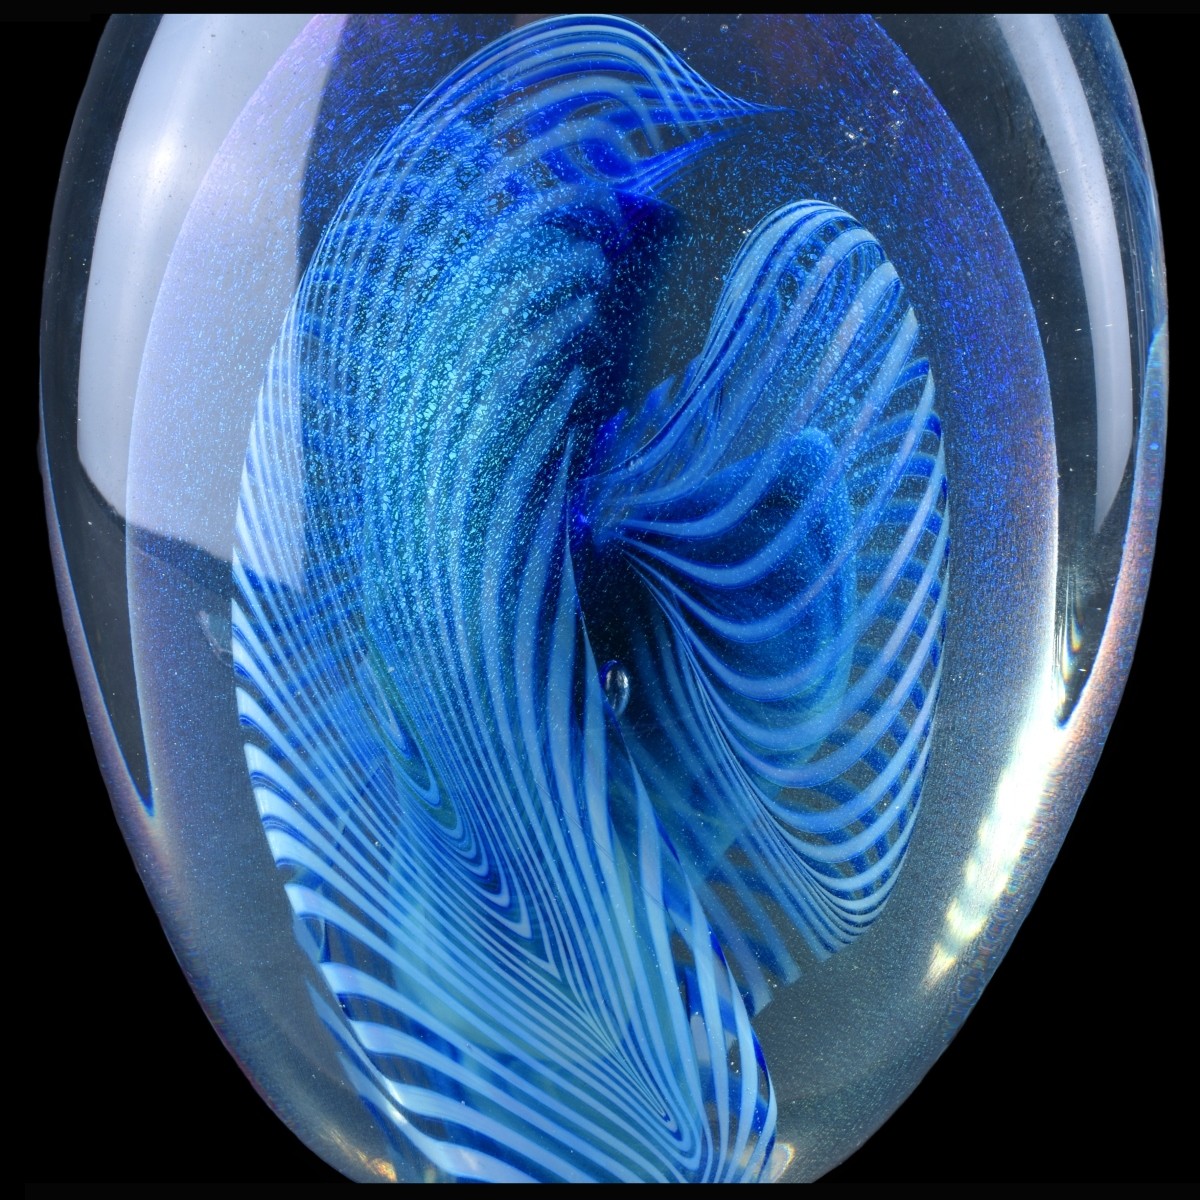 Three (3) Pieces Contemporary Art Glass